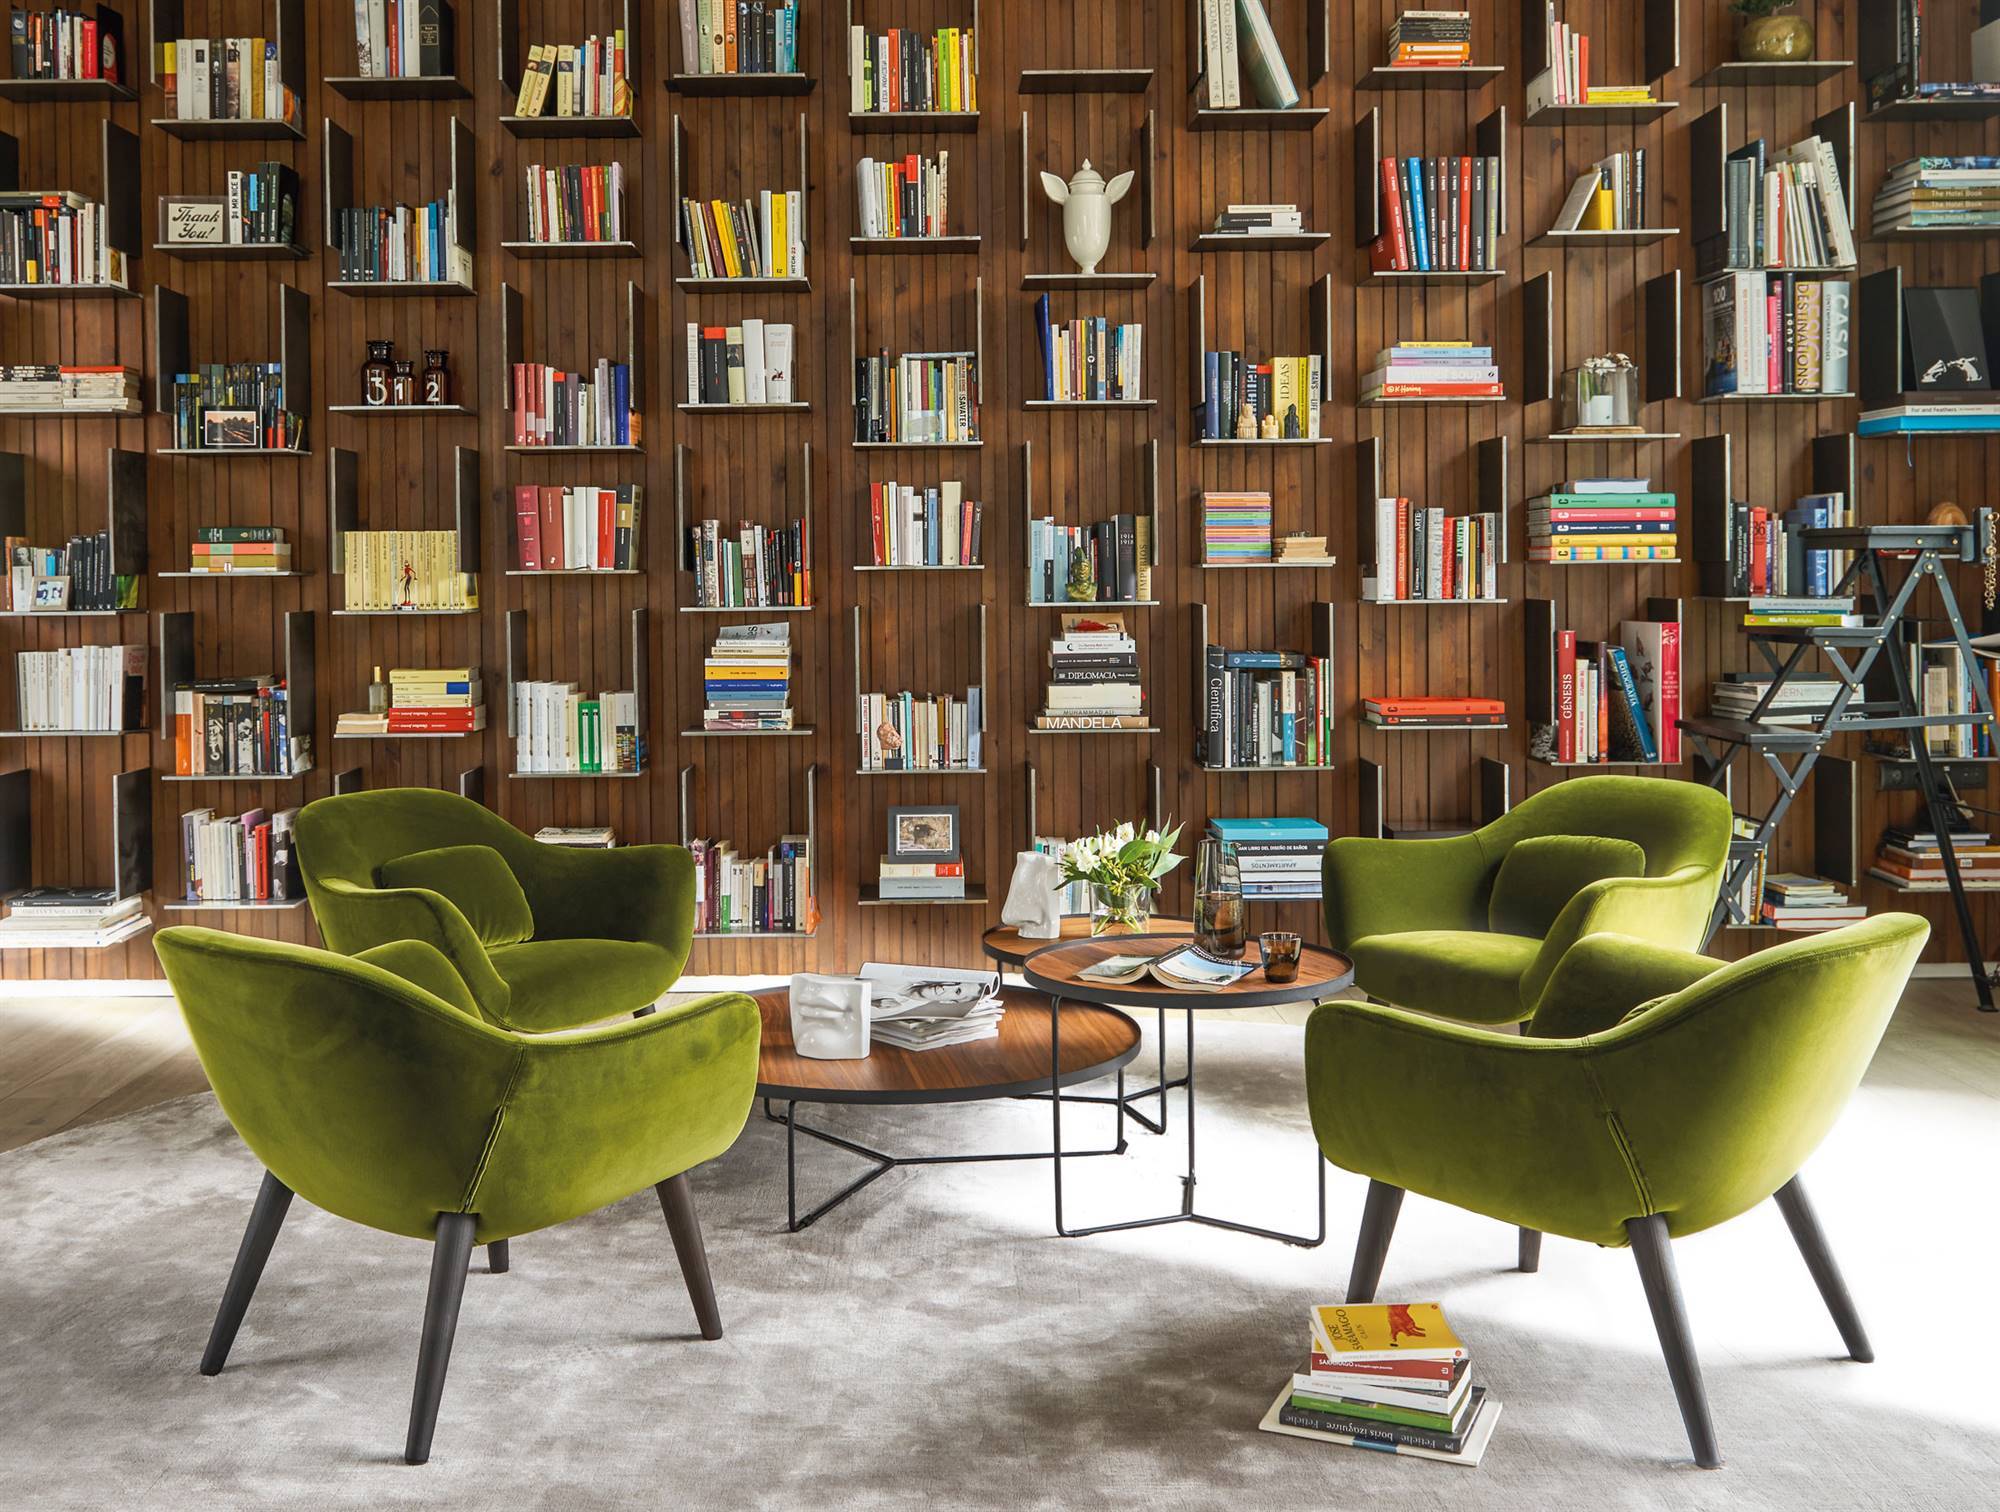 librería hecha a medida diseño estantes libros butacas verdes 